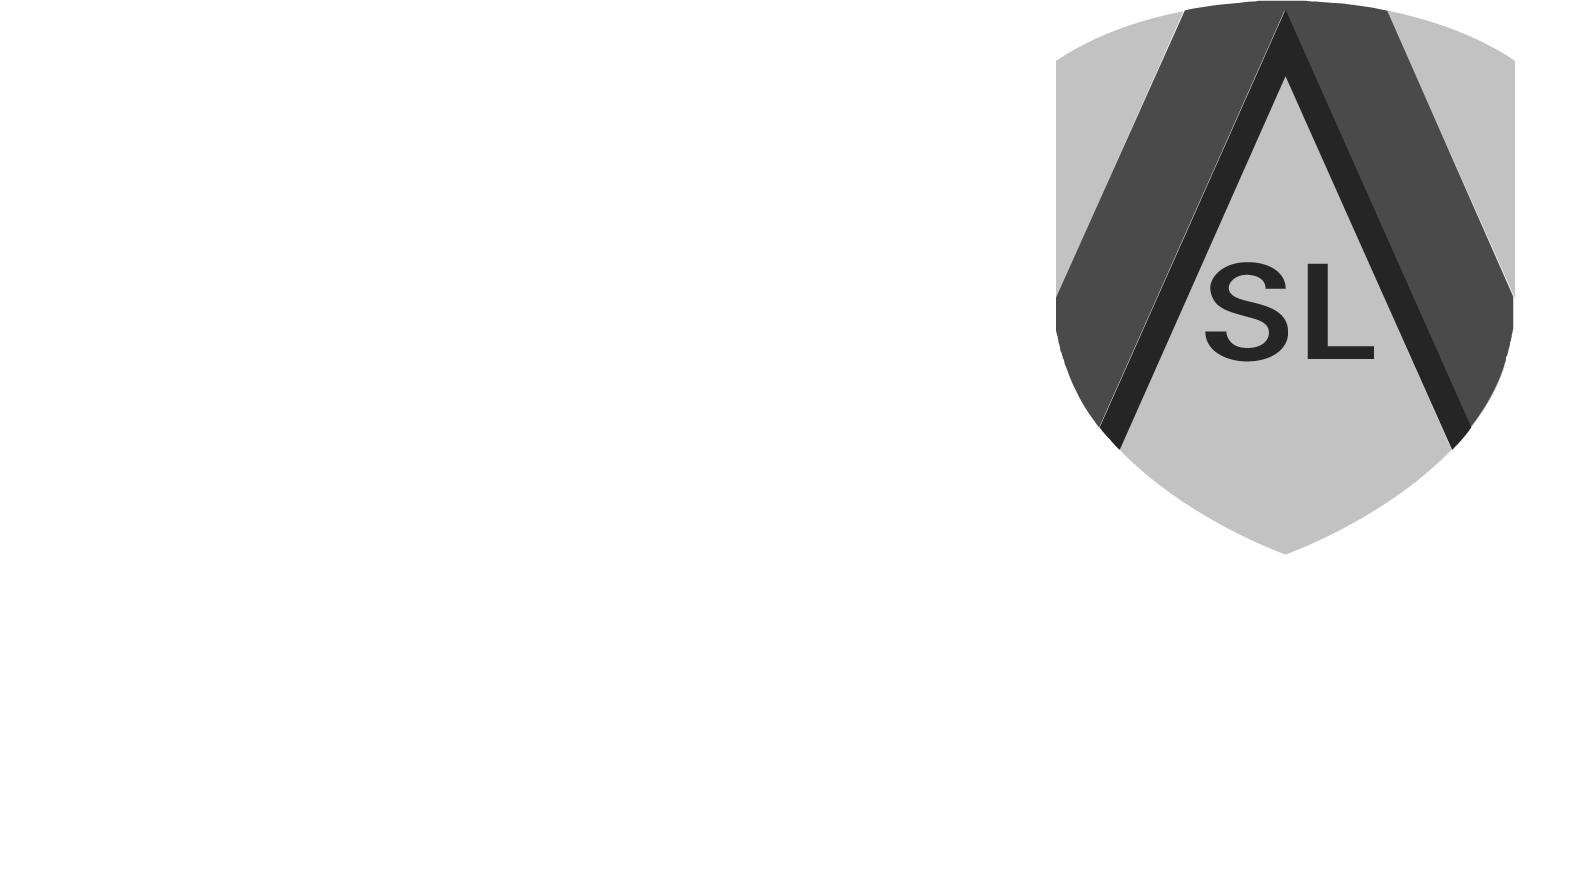 Académie Saint-Louis